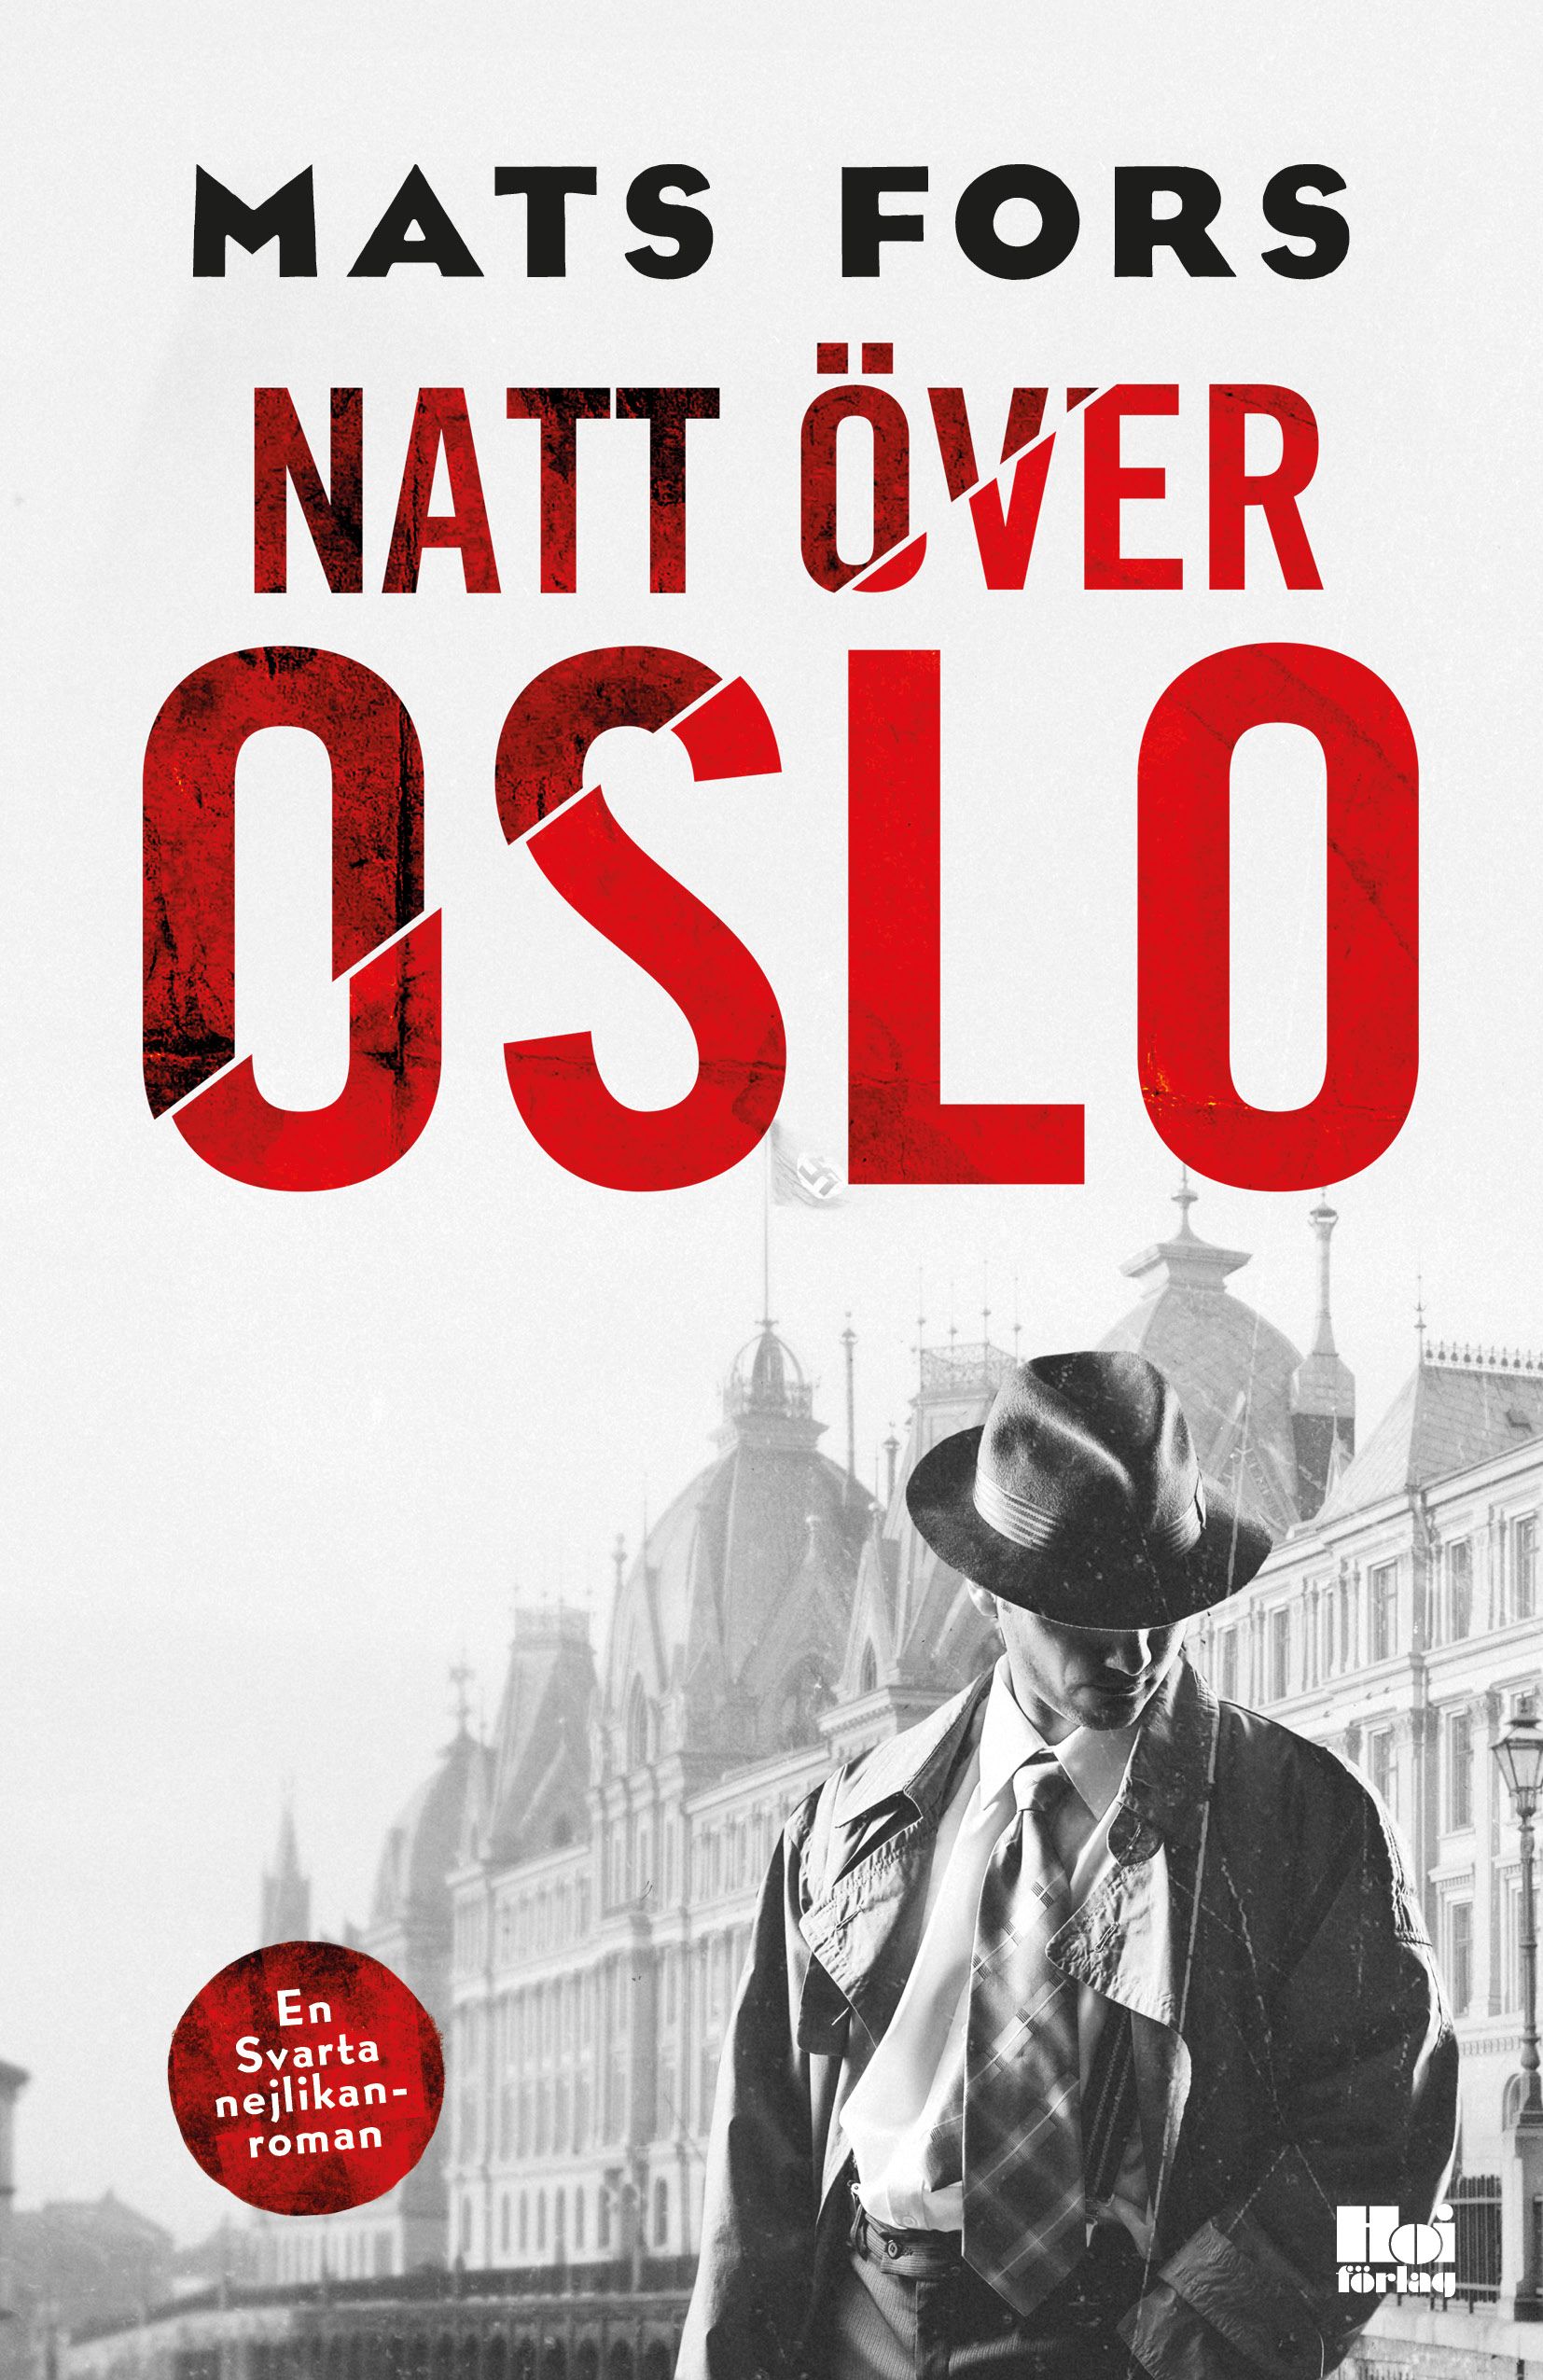 Natt över Oslo, eBook by Mats Fors